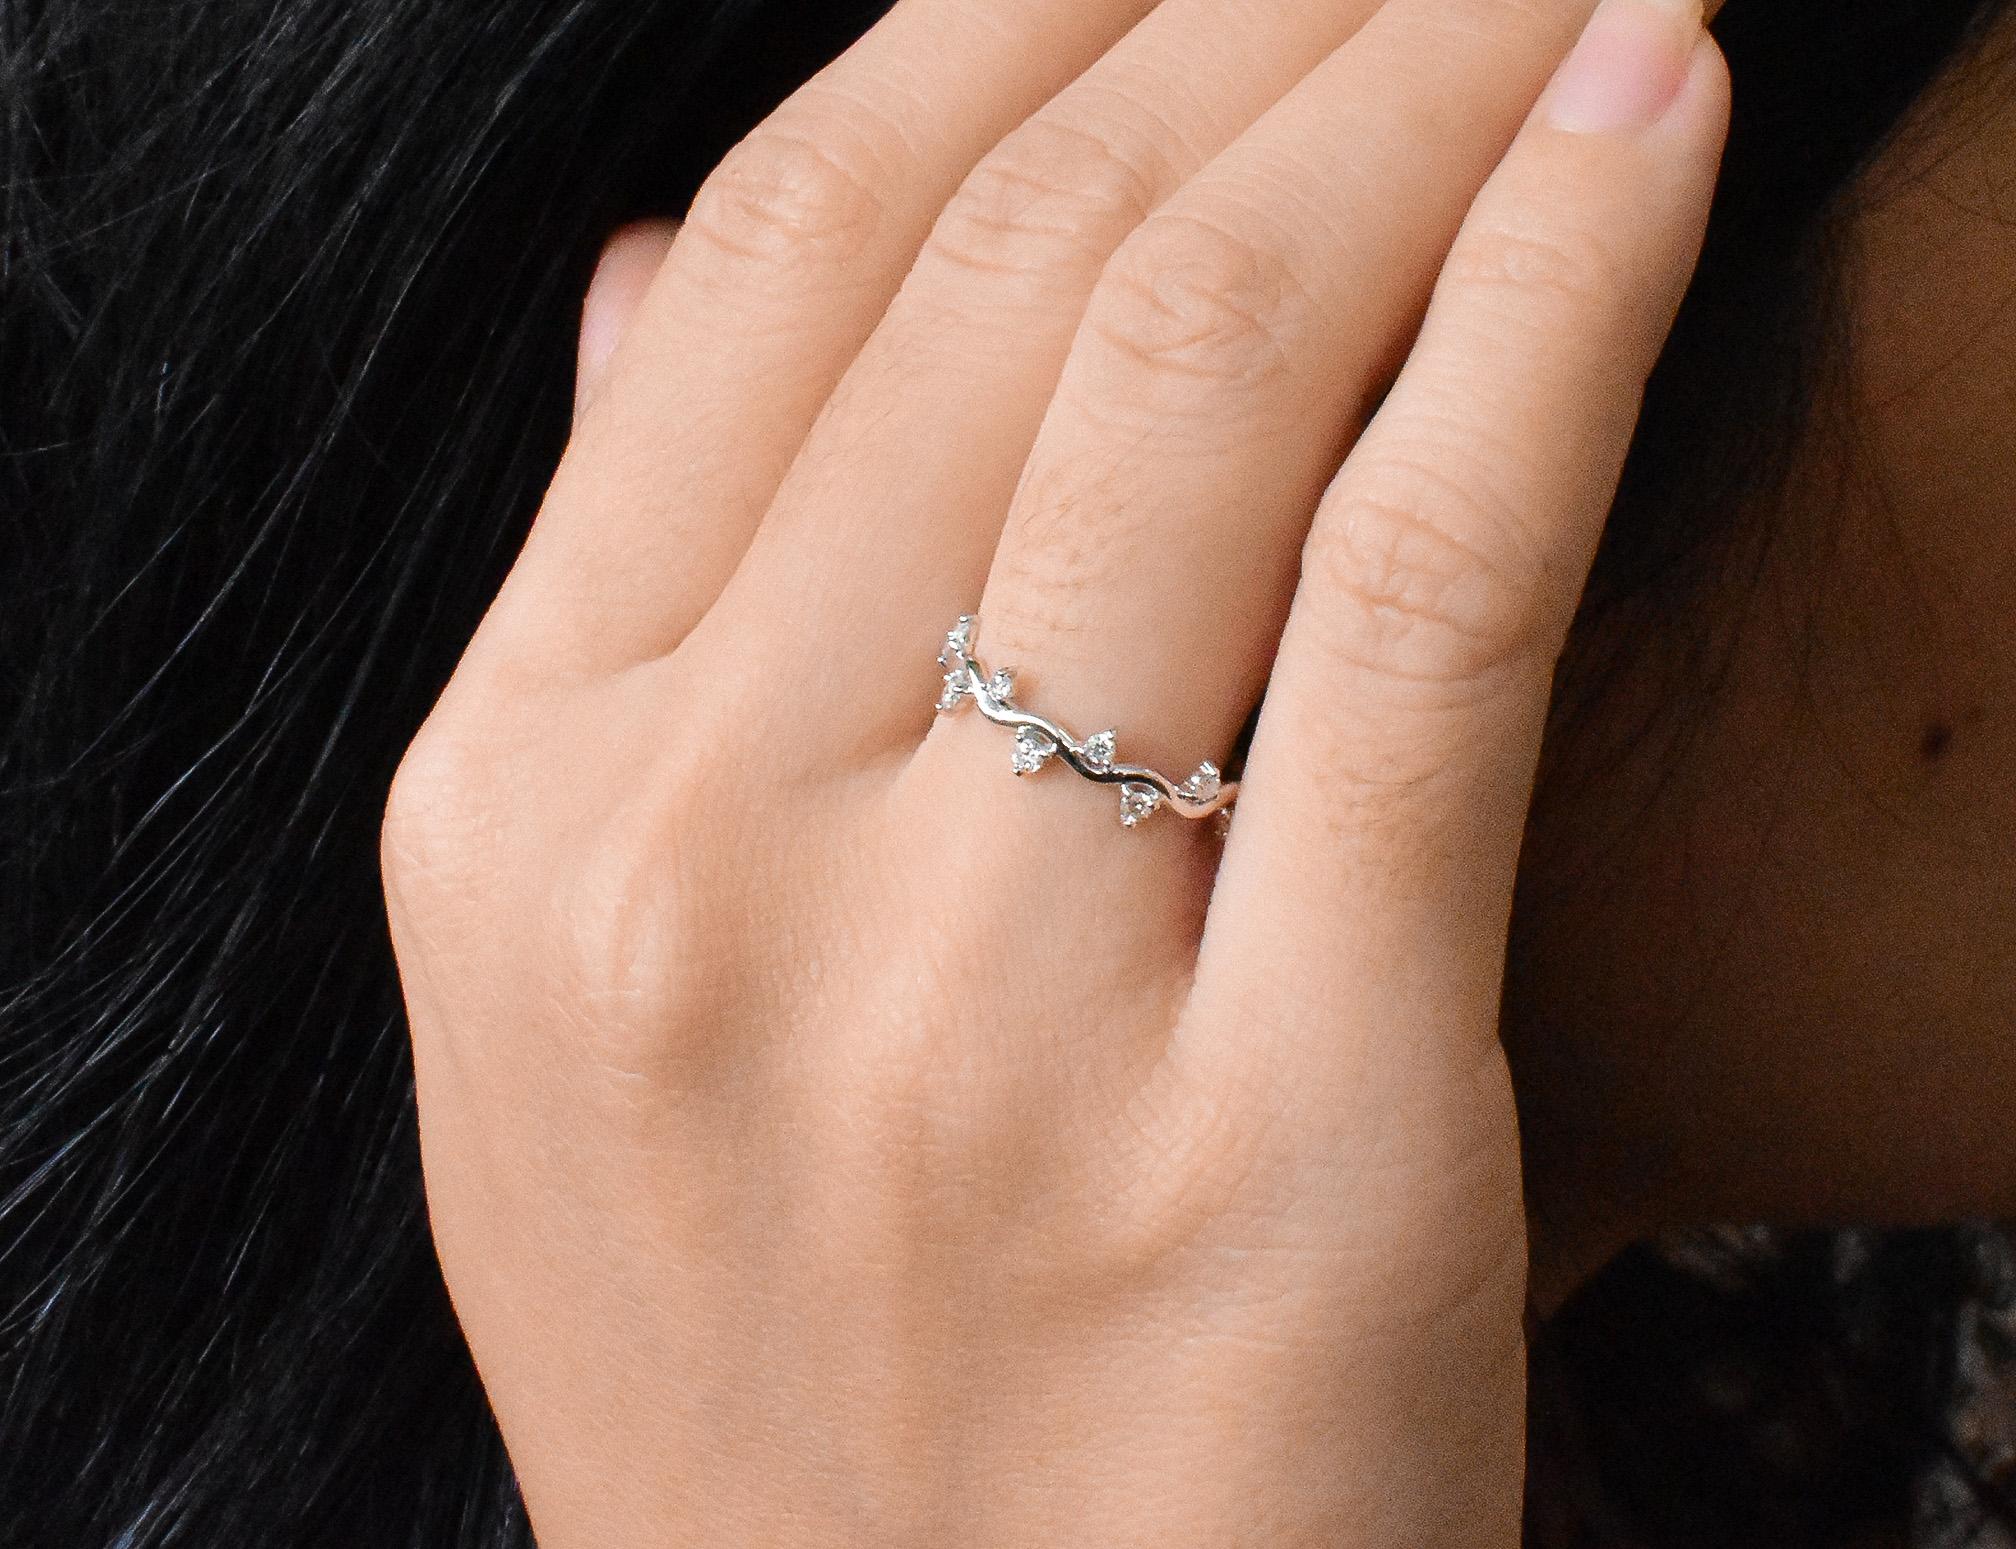 For Sale:  18k Gold Diamond Ring Cluster Diamond Ring Half Eternity Gift Ring 8